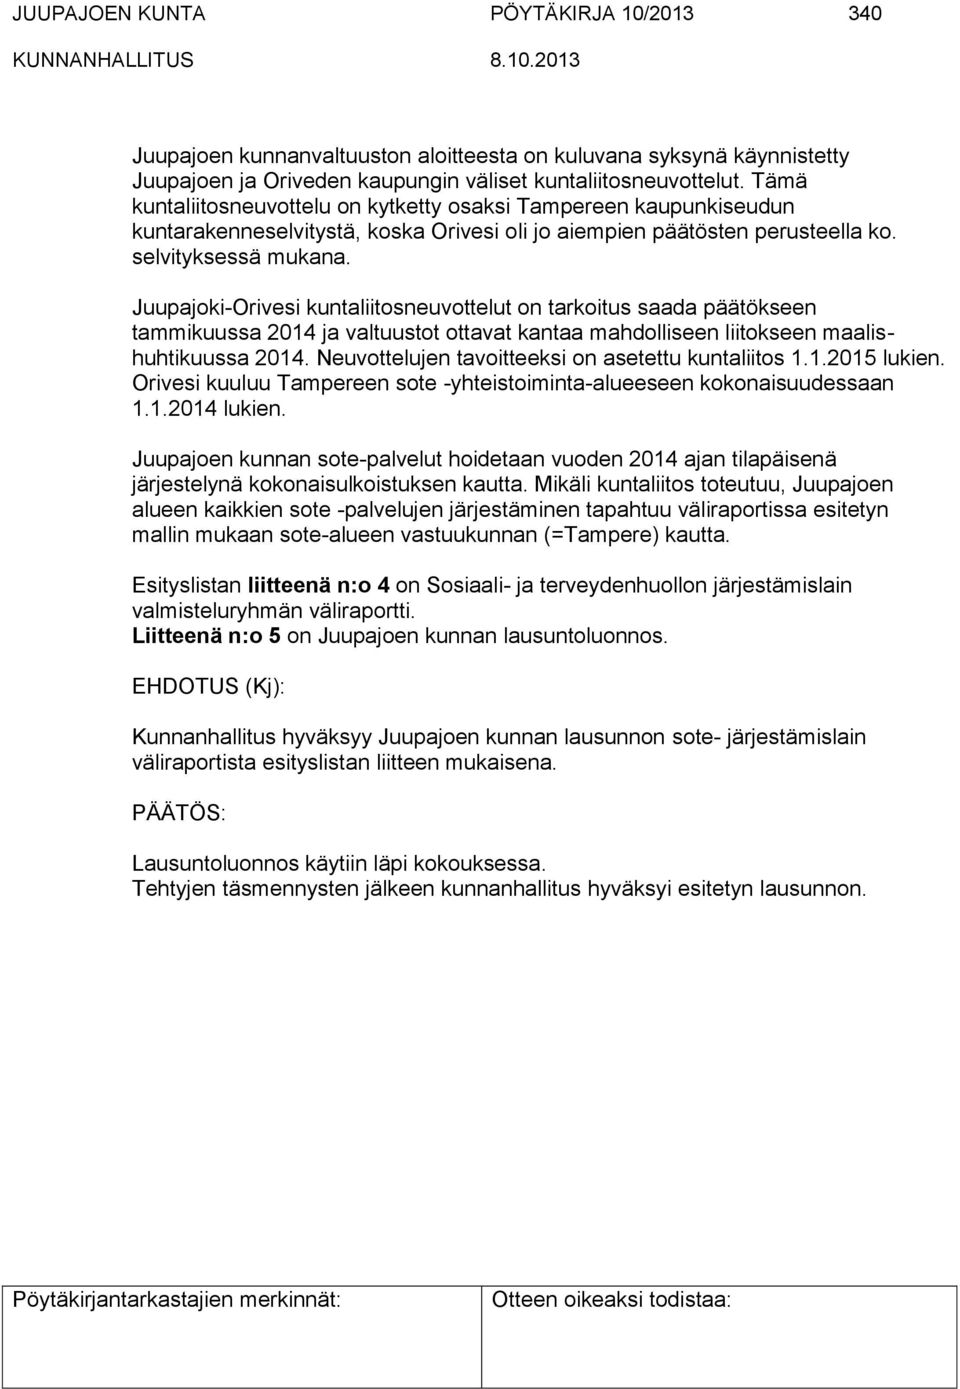 Juupajoki-Orivesi kuntaliitosneuvottelut on tarkoitus saada päätökseen tammikuussa 2014 ja valtuustot ottavat kantaa mahdolliseen liitokseen maalishuhtikuussa 2014.